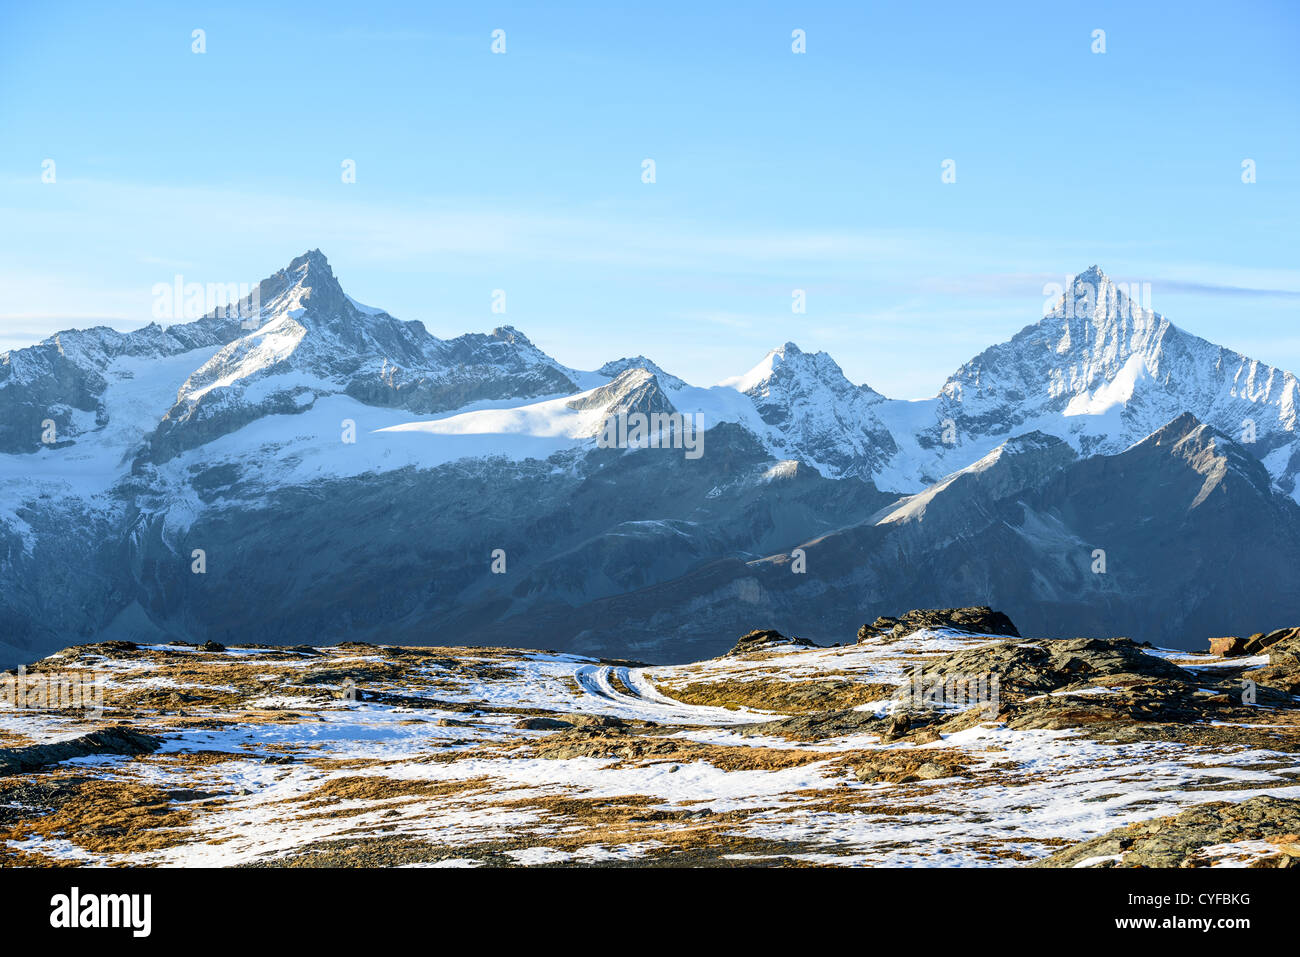 Zinalrothorn et Weisshorn des pics de montagne, vue du Gornergrat, Zermatt, Suisse Banque D'Images